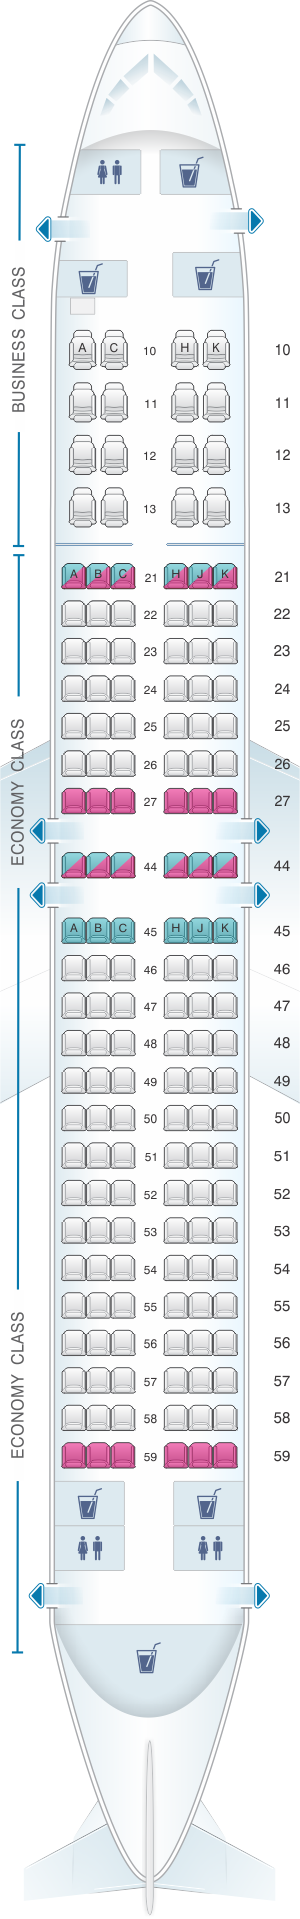 Seat Map El Al Israel Airlines Boeing B737 800 154pax | SeatMaestro